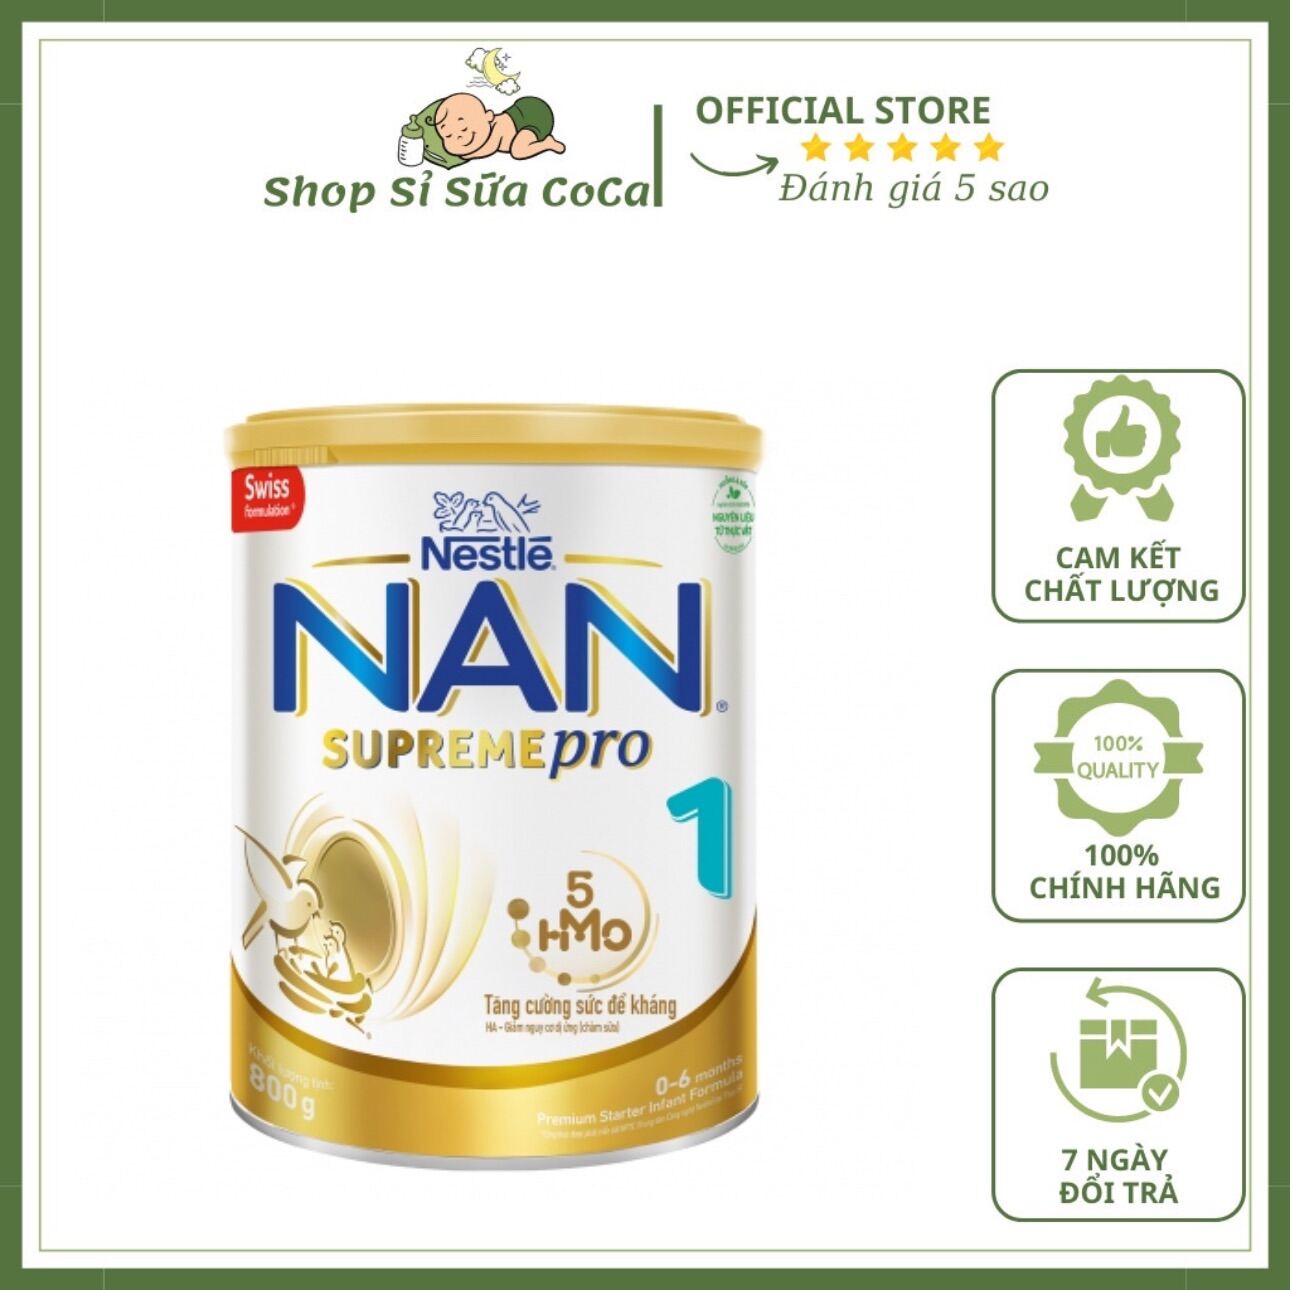 Sữa Nan Supreme Pro số 1 5-HMO 800g New 0 - 6 tháng